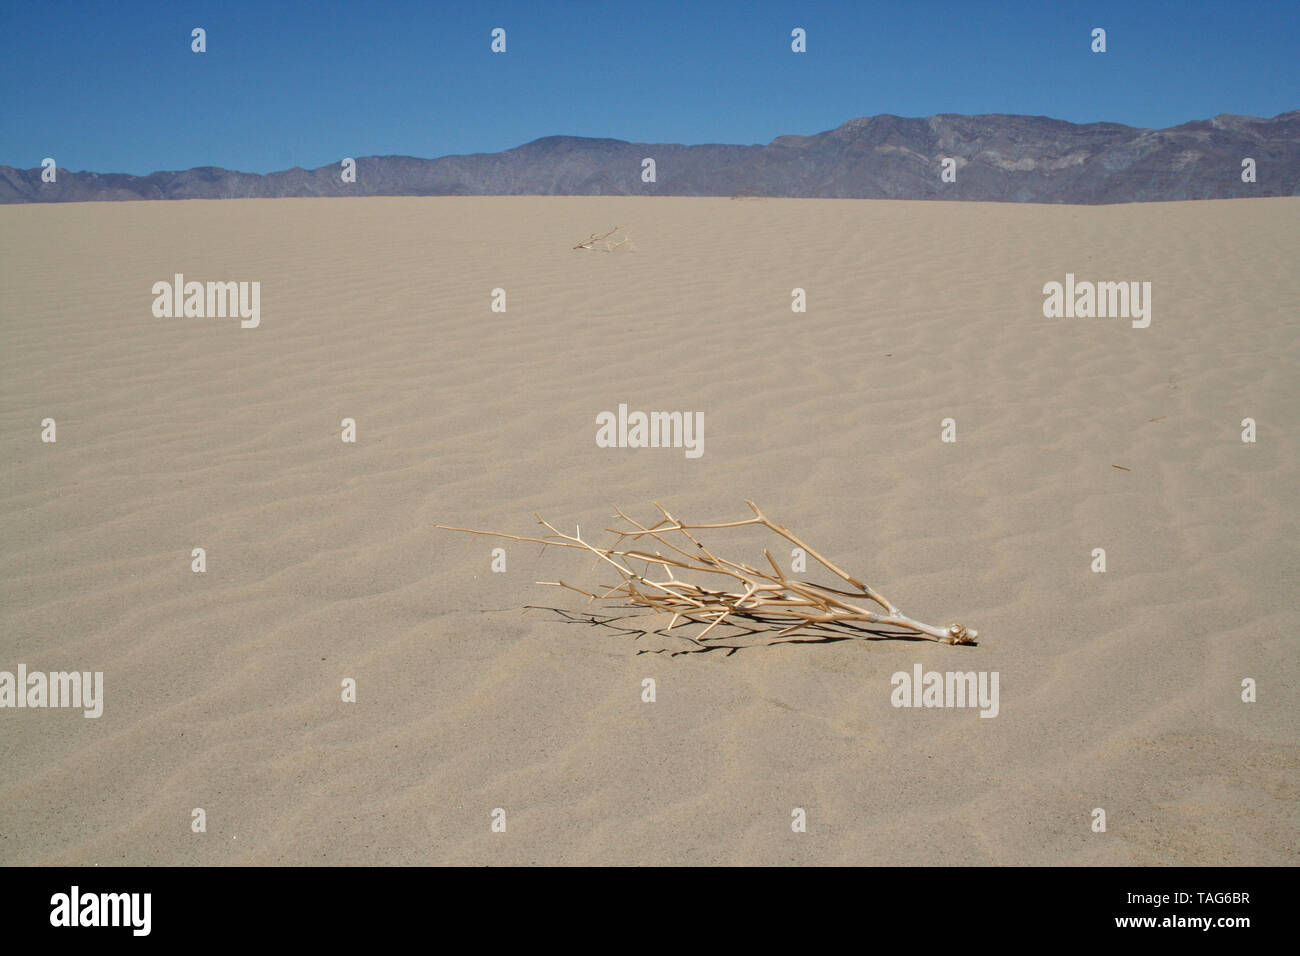 Dead Plant in Sand Dunes of California Desert Stock Photo